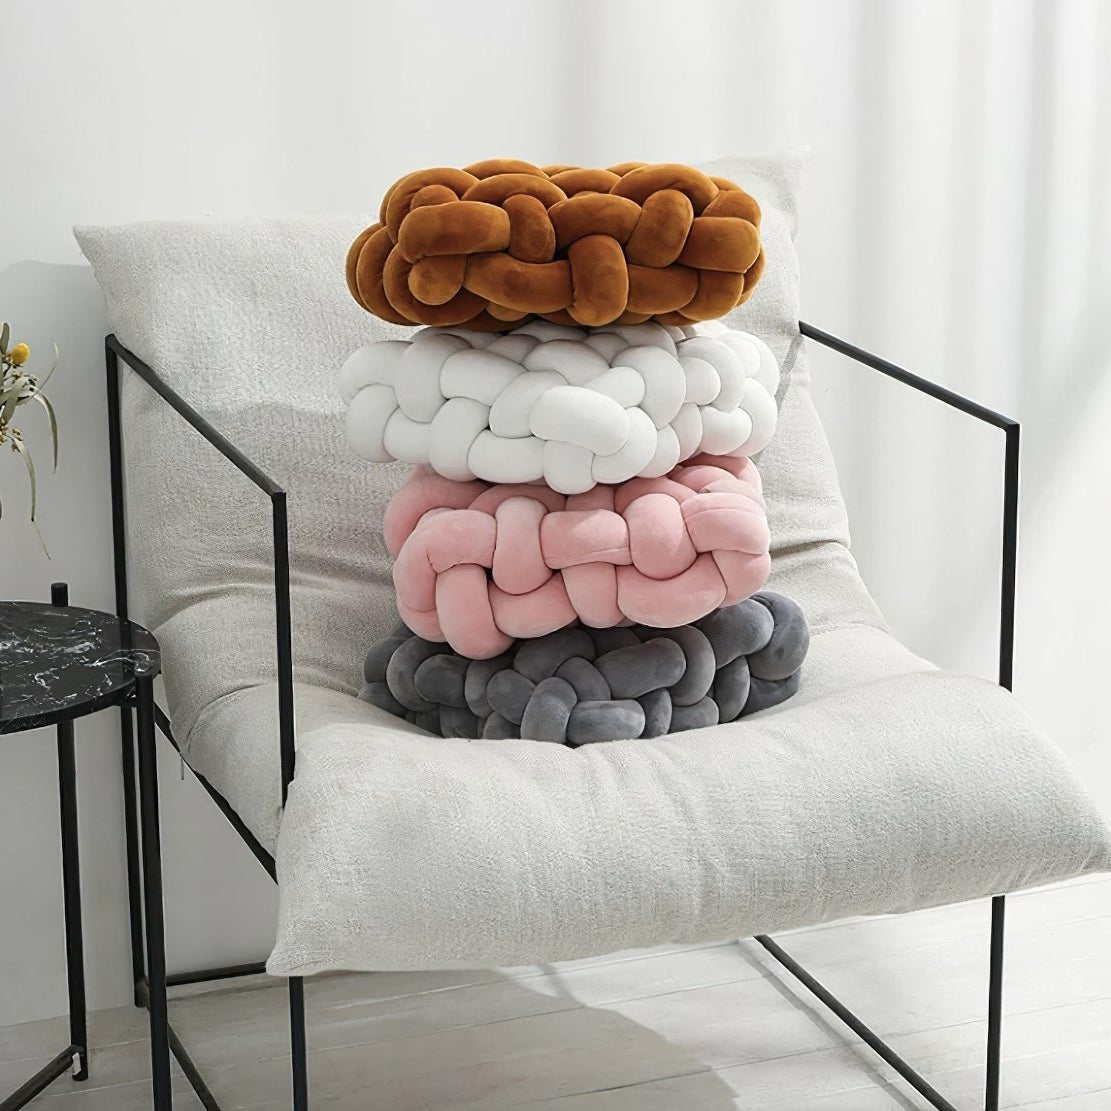 Woven, plush, knot chair cushions